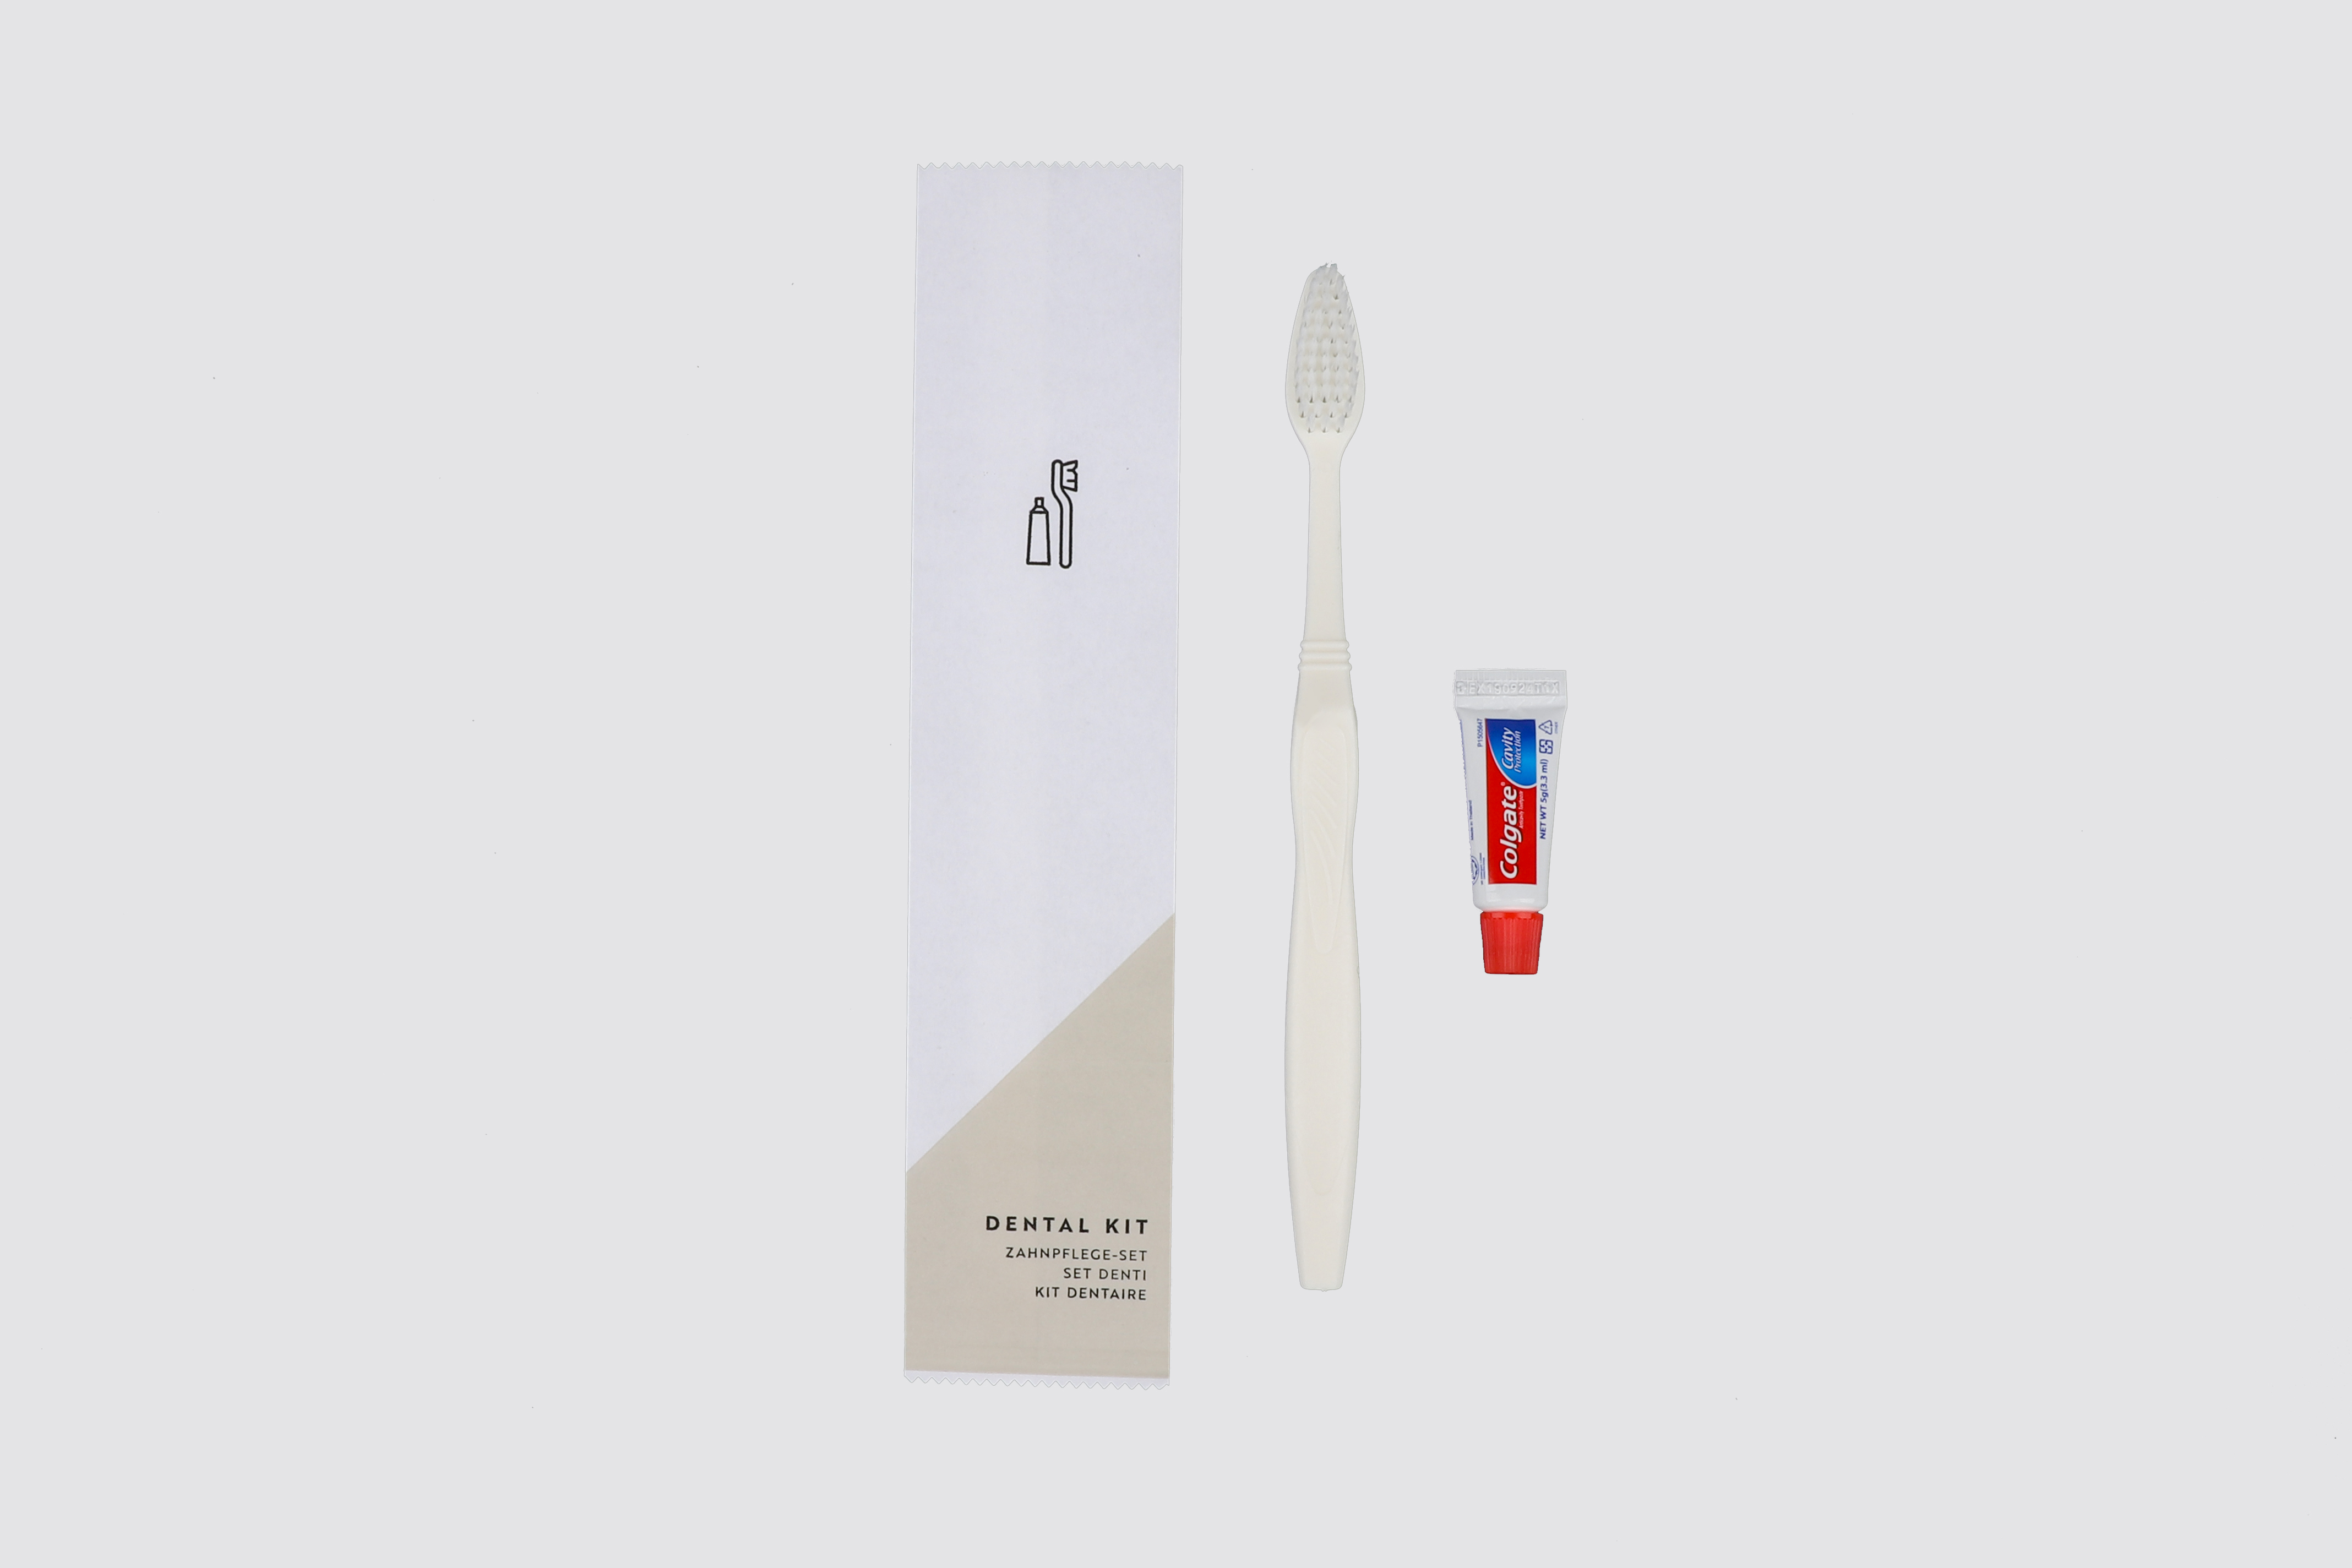 BASIC PAPER - Dental kit in paper sachet